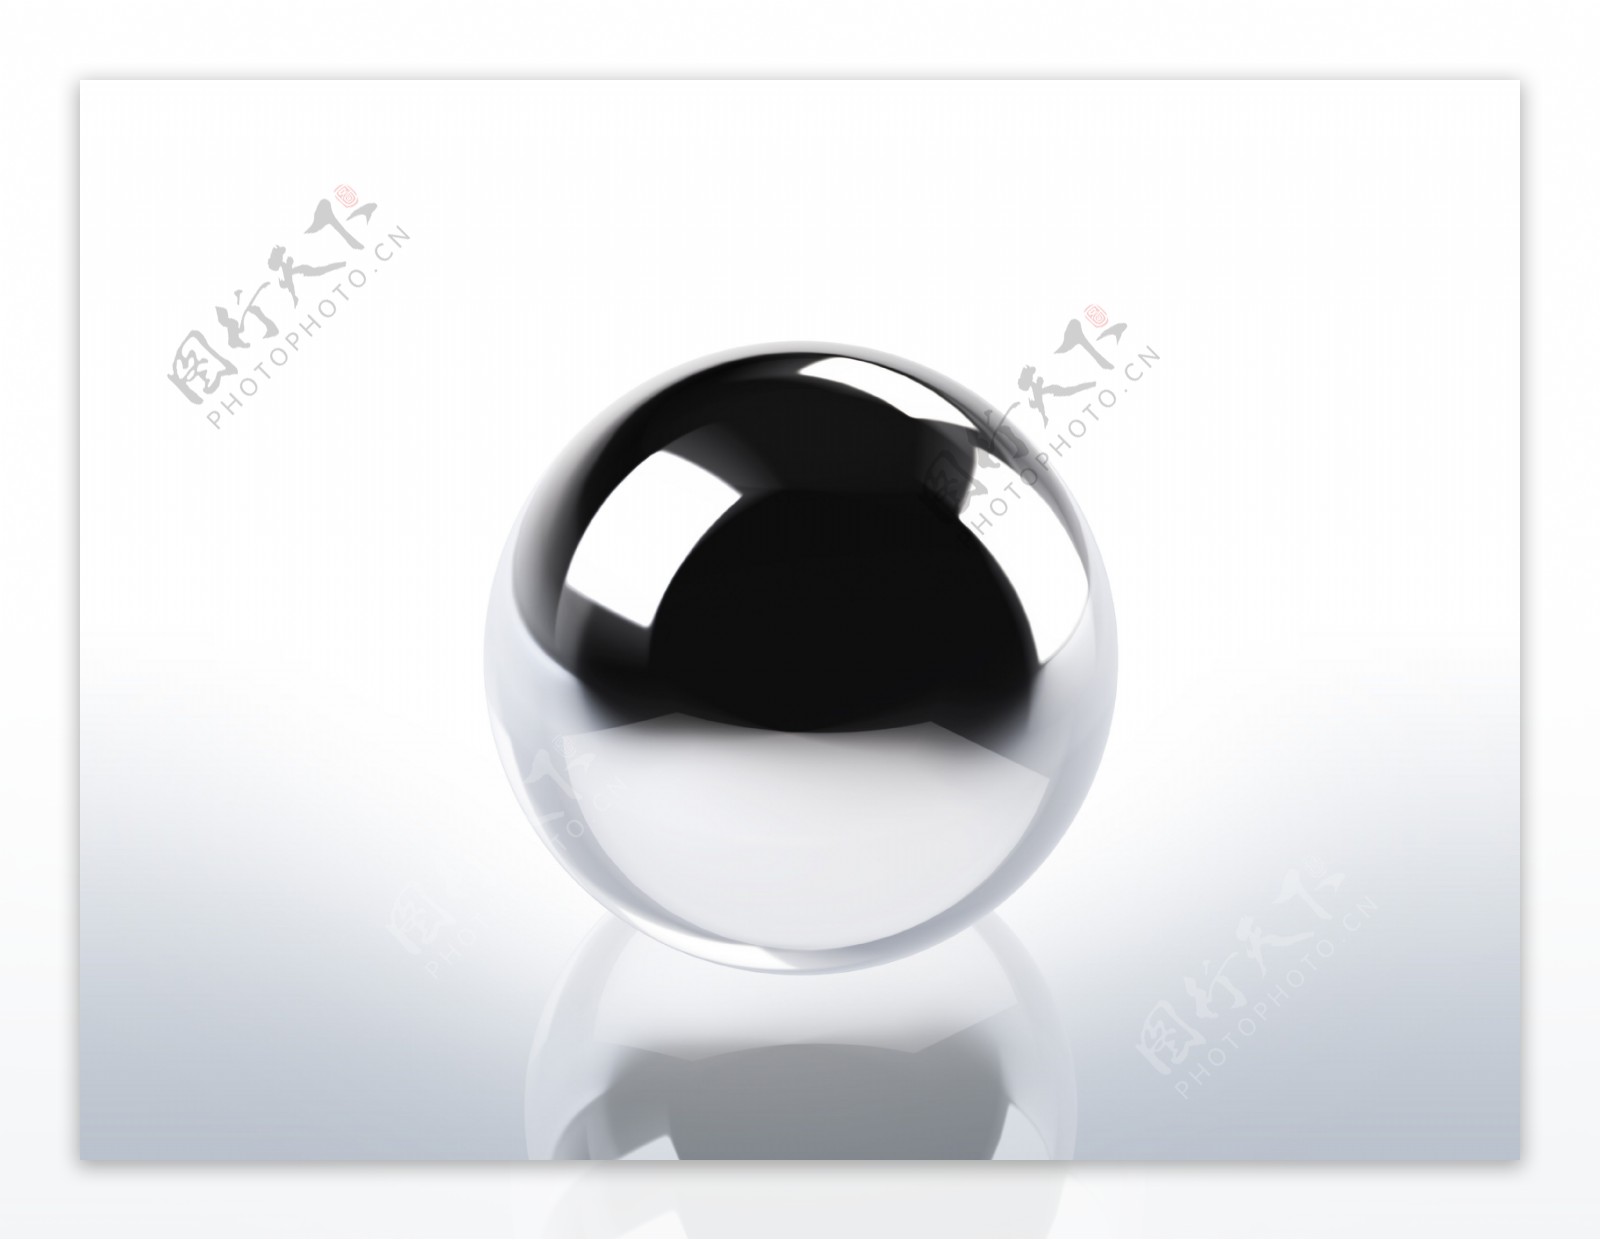 黑色3D模型钢珠黑珍珠圆球桌面壁纸背景